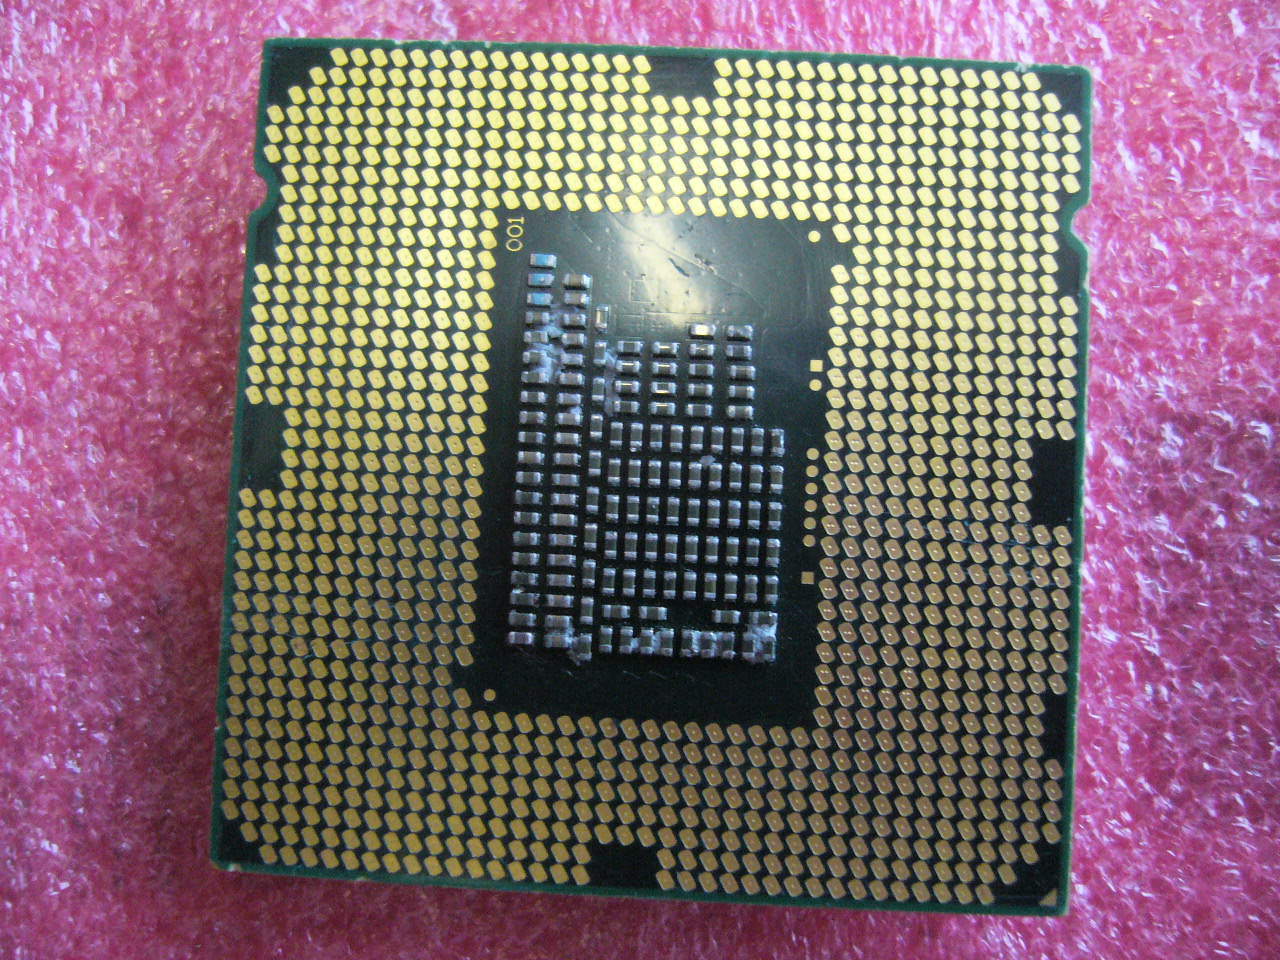 QTY 1x INTEL CPU G850 2.9GHZ/3MB LGA1155 SR05Q - Click Image to Close